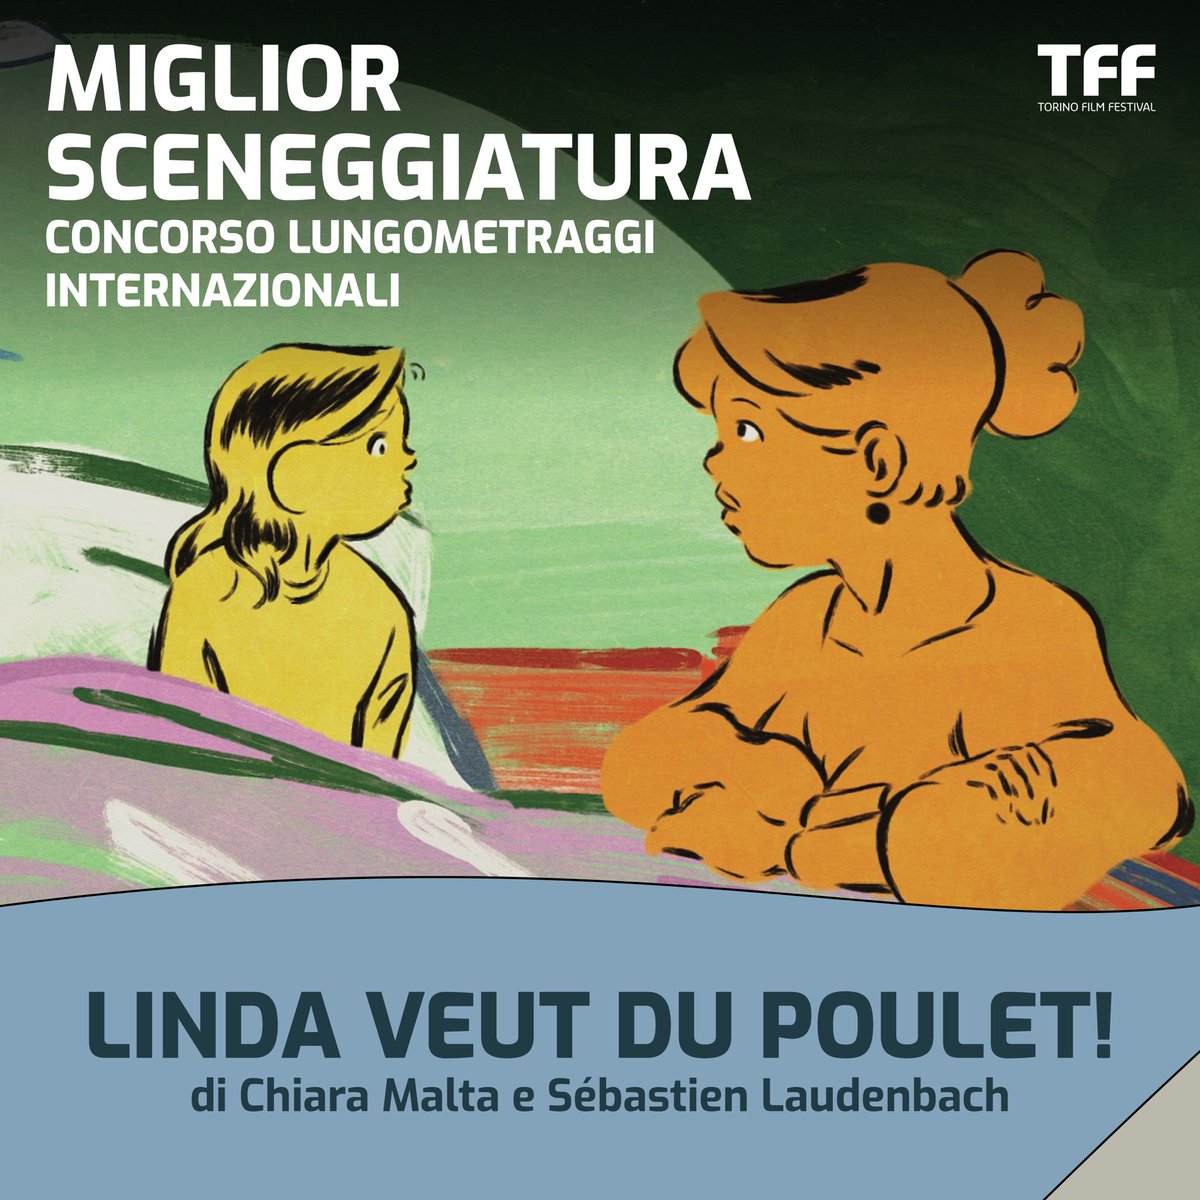 il Premio Miglior Sceneggiatura va a LINDA VEUT DU POULET!, di Chiara Malta e Sébastien Laudenbach.